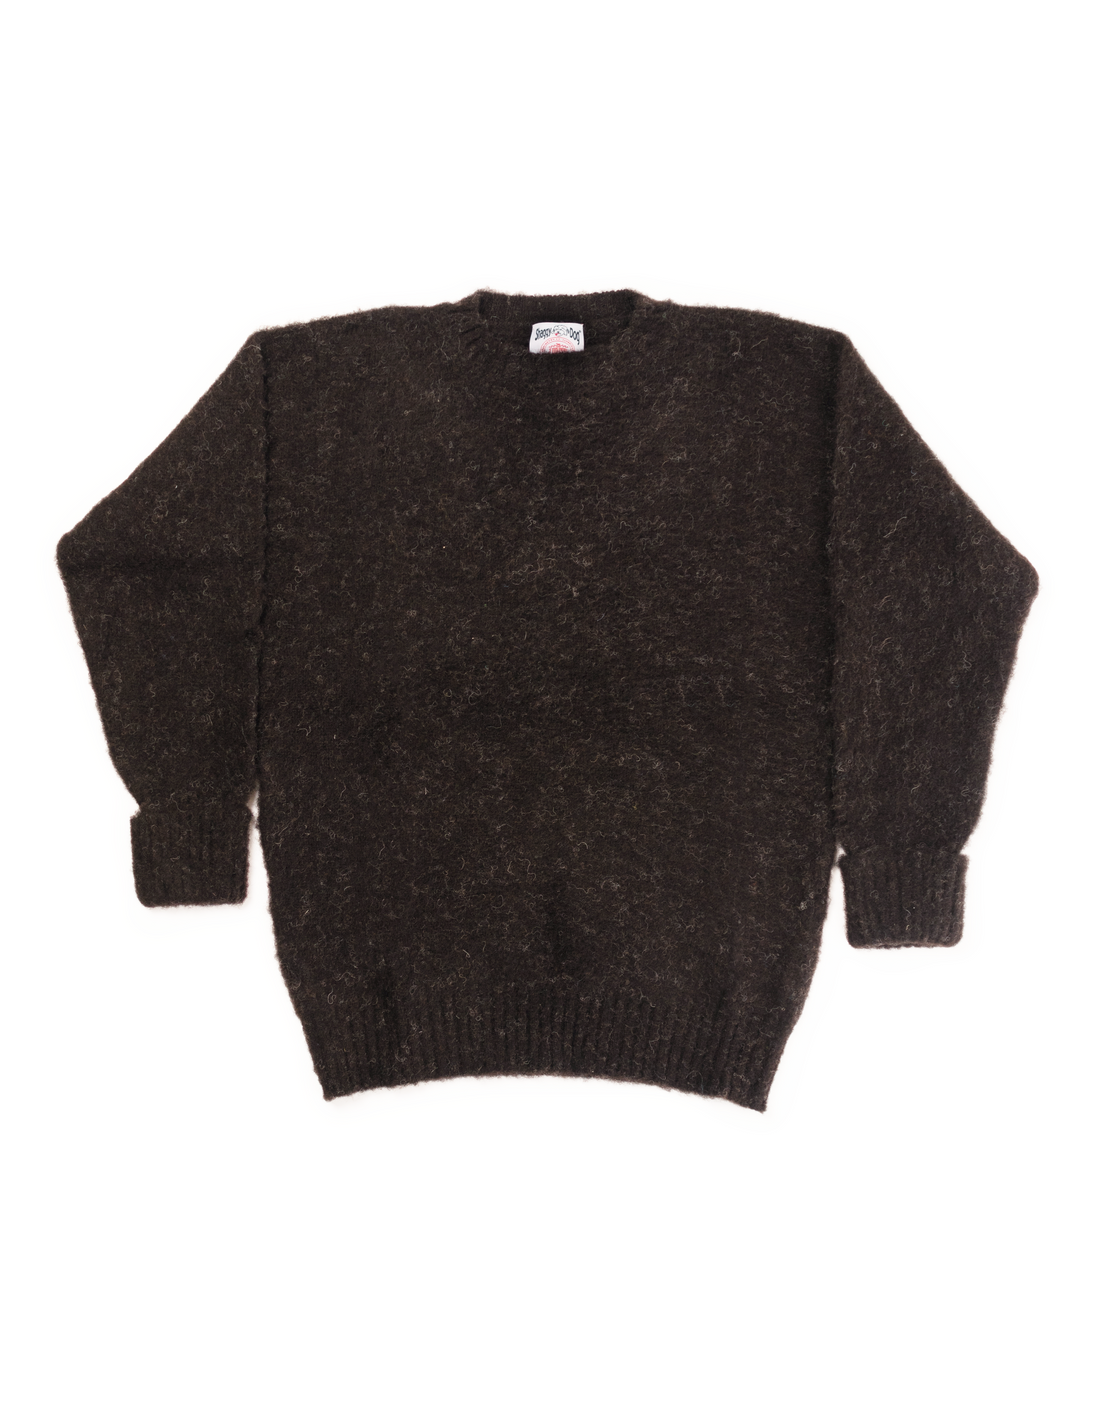 Shaggy Dog Sweater Black - Classic Fit | Men's Sweaters - J. Press – J ...